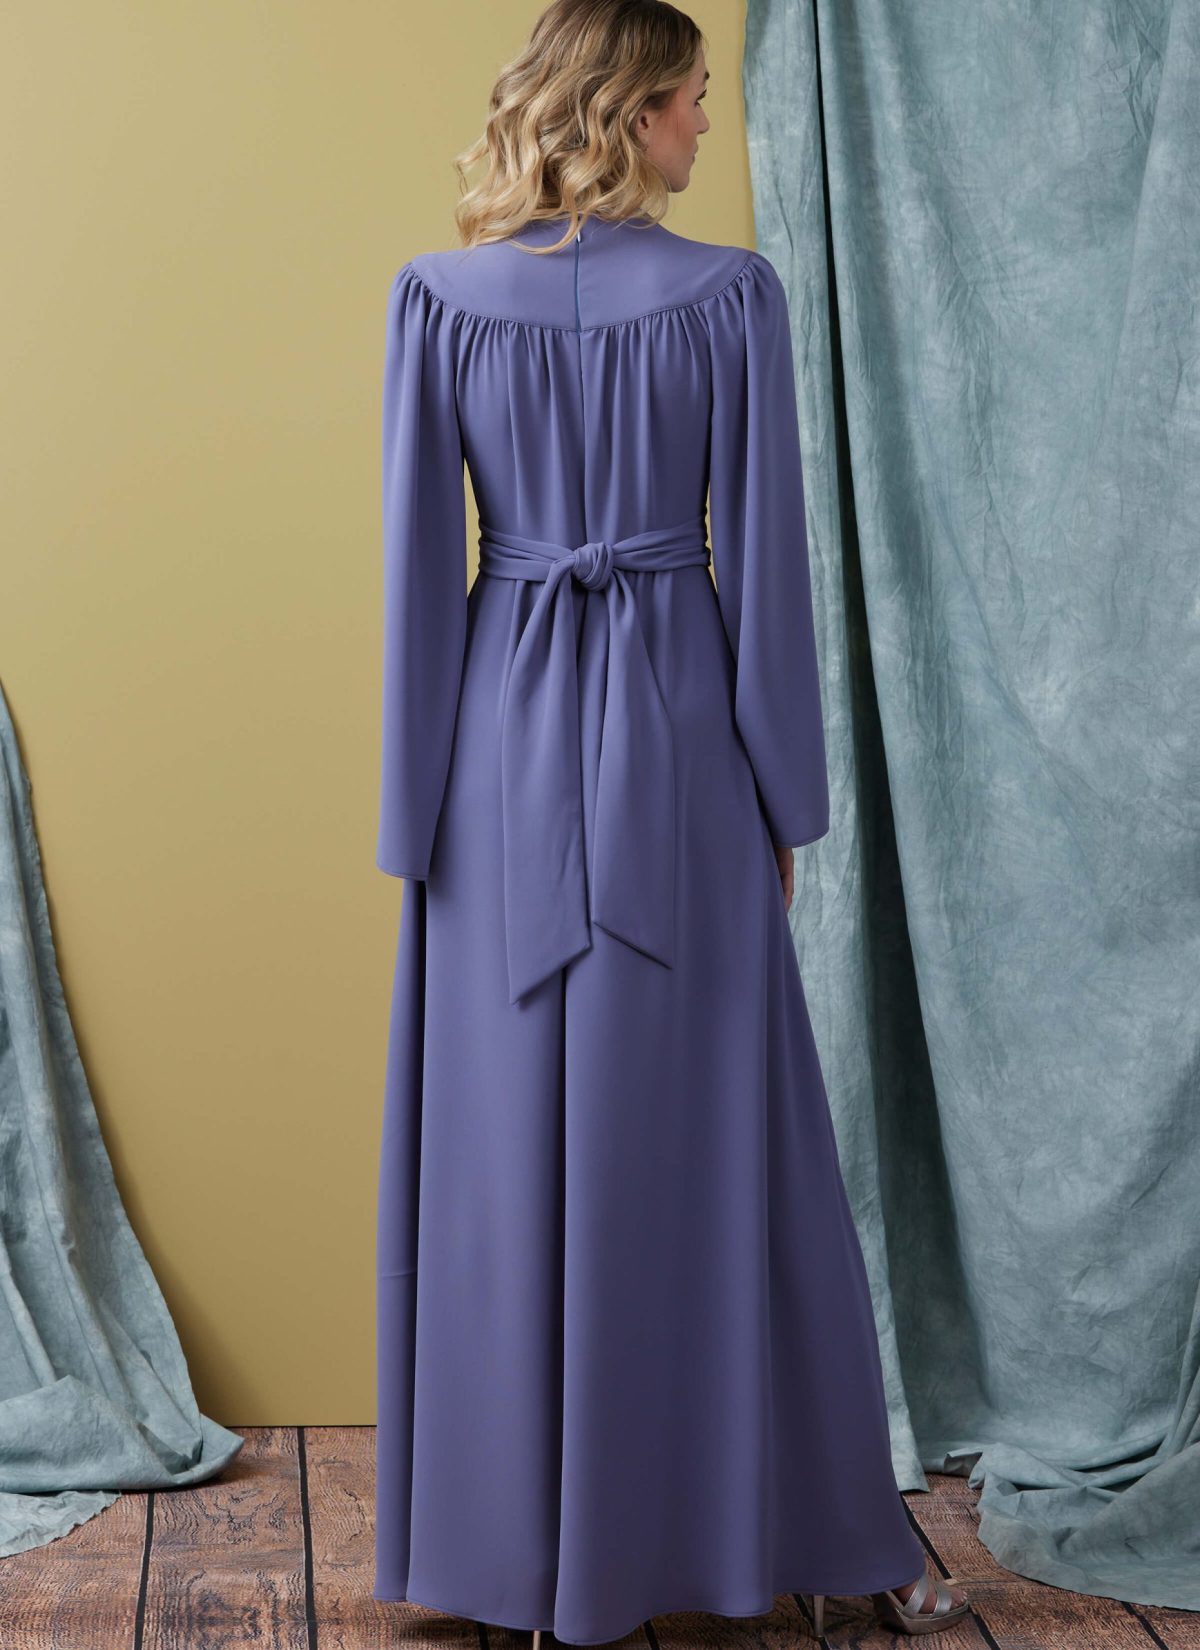 Vogue Patterns V1921 Misses' Dress in Two Lengths